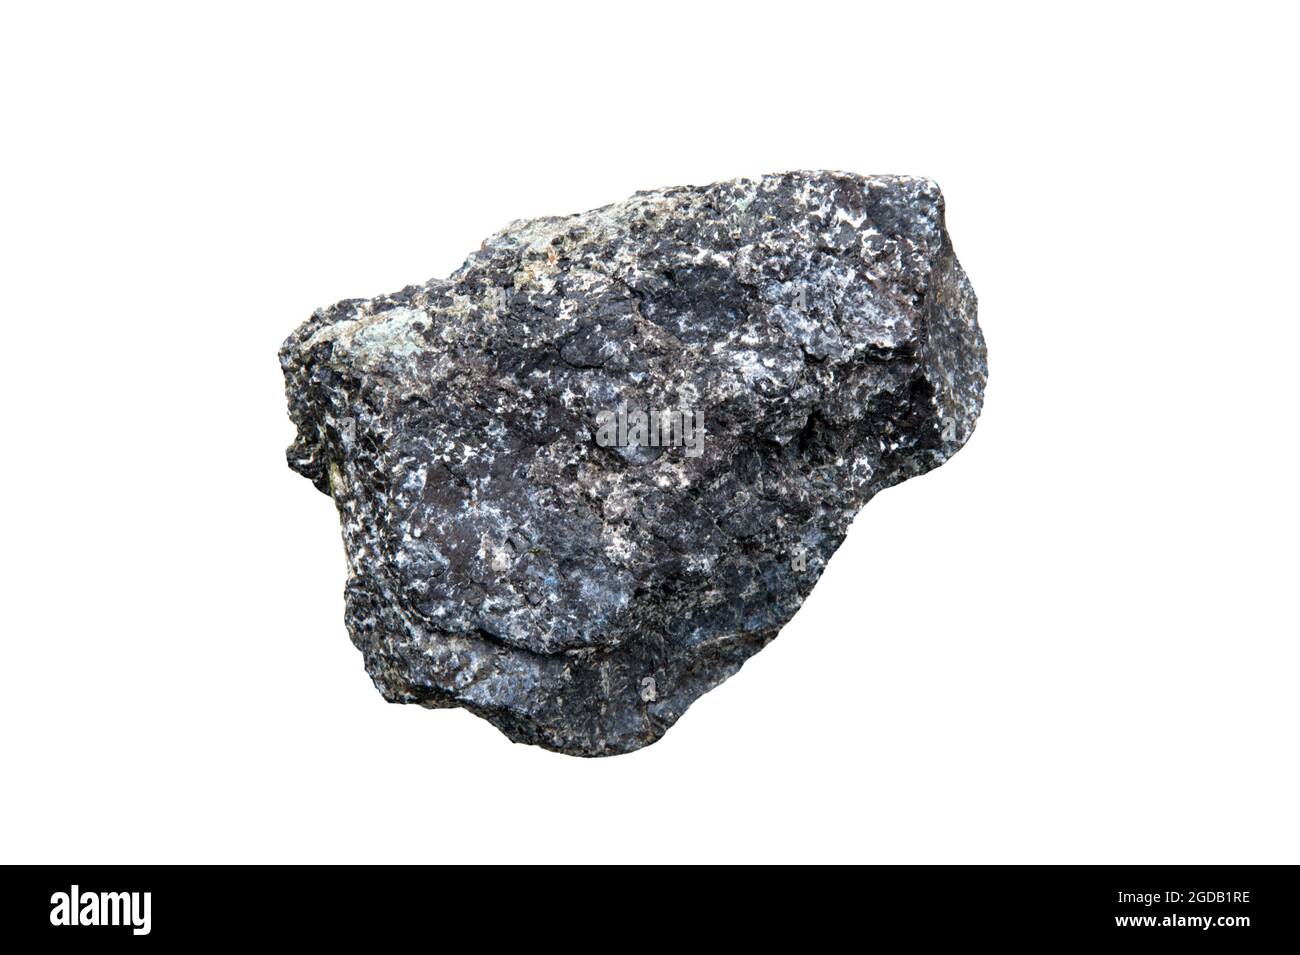 Eine Probe von Chromit - einem kristallinen Mineral, das hauptsächlich aus Eisenoxid- und Chromoxidverbindungen besteht. Stockfoto